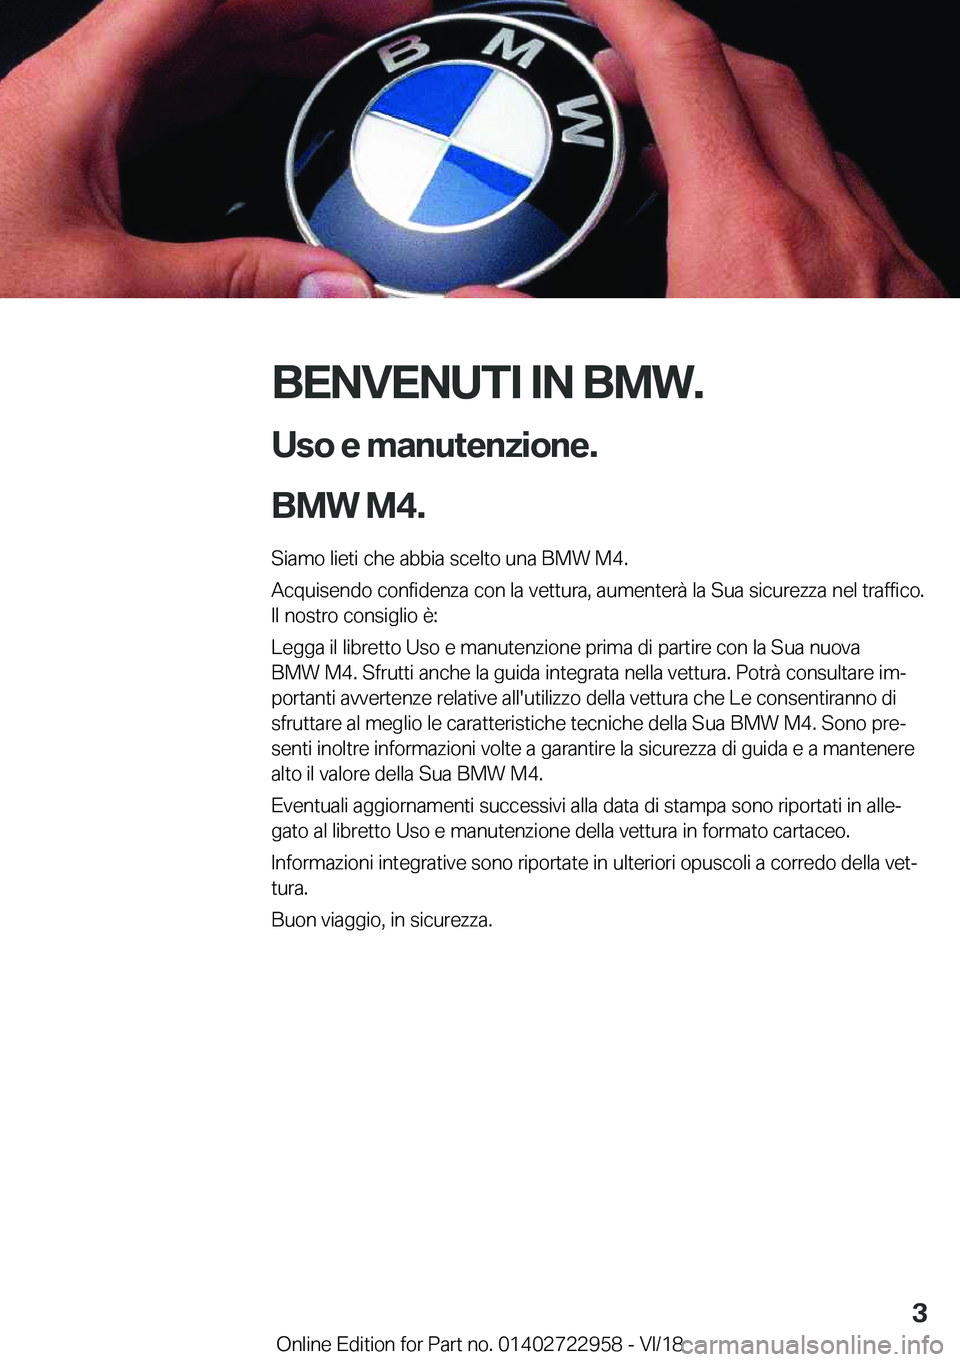 BMW M4 2019  Libretti Di Uso E manutenzione (in Italian) �B�E�N�V�E�N�U�T�I��I�N��B�M�W�.�U�s�o��e��m�a�n�u�t�e�n�z�i�o�n�e�.
�B�M�W��M�4�.
�S�i�a�m�o��l�i�e�t�i��c�h�e��a�b�b�i�a��s�c�e�l�t�o��u�n�a��B�M�W��M�4�.
�A�c�q�u�i�s�e�n�d�o��c�o�n�f�